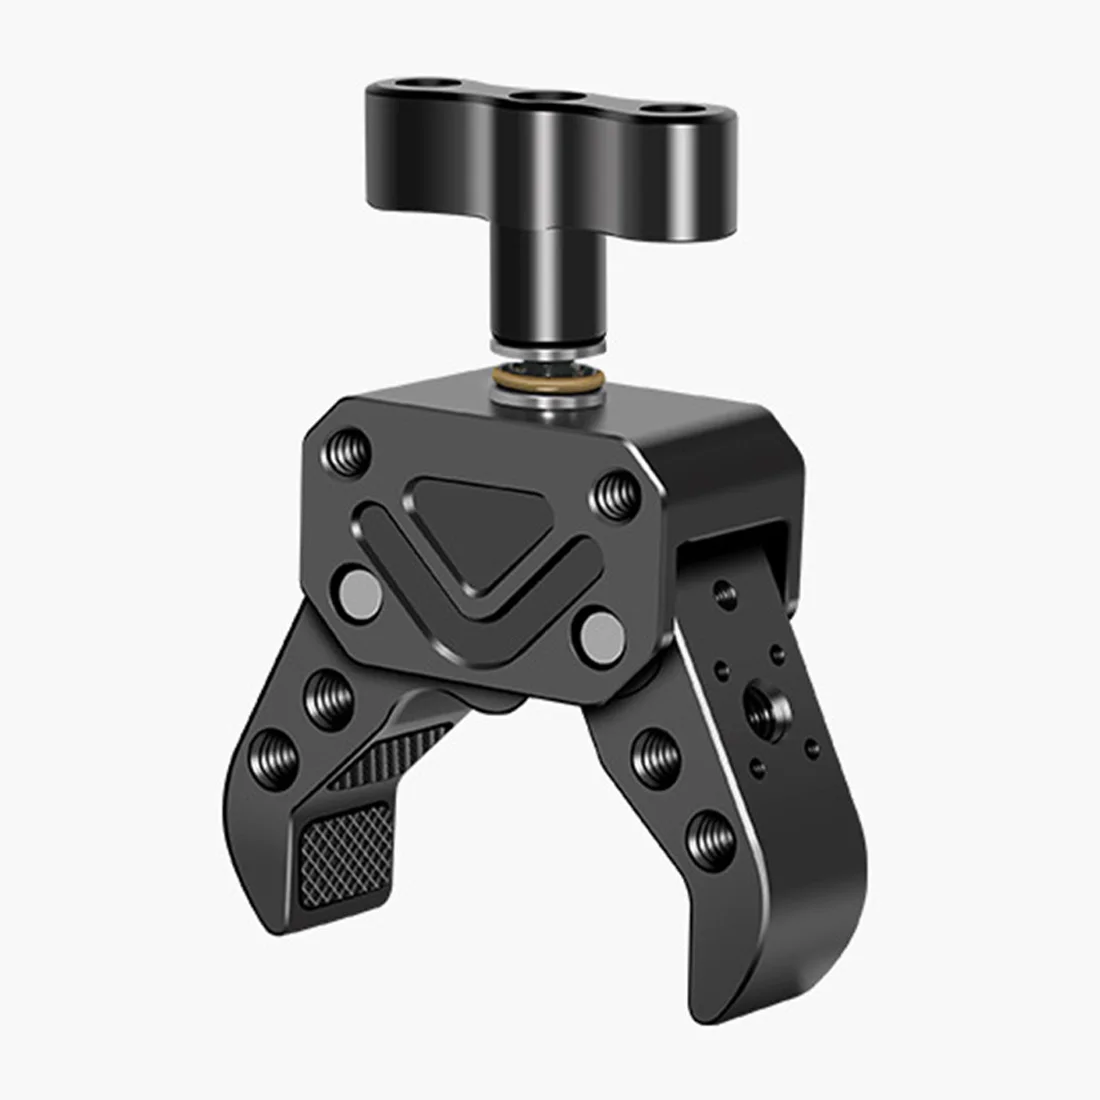 FEICHAO Opgraderet Dual BallHead 1/4 Skrue Mount Adapter Magic Arm 360 kuglehoved med Krabbe-Klo Klemme for Sony SLR Kamera Overvågning